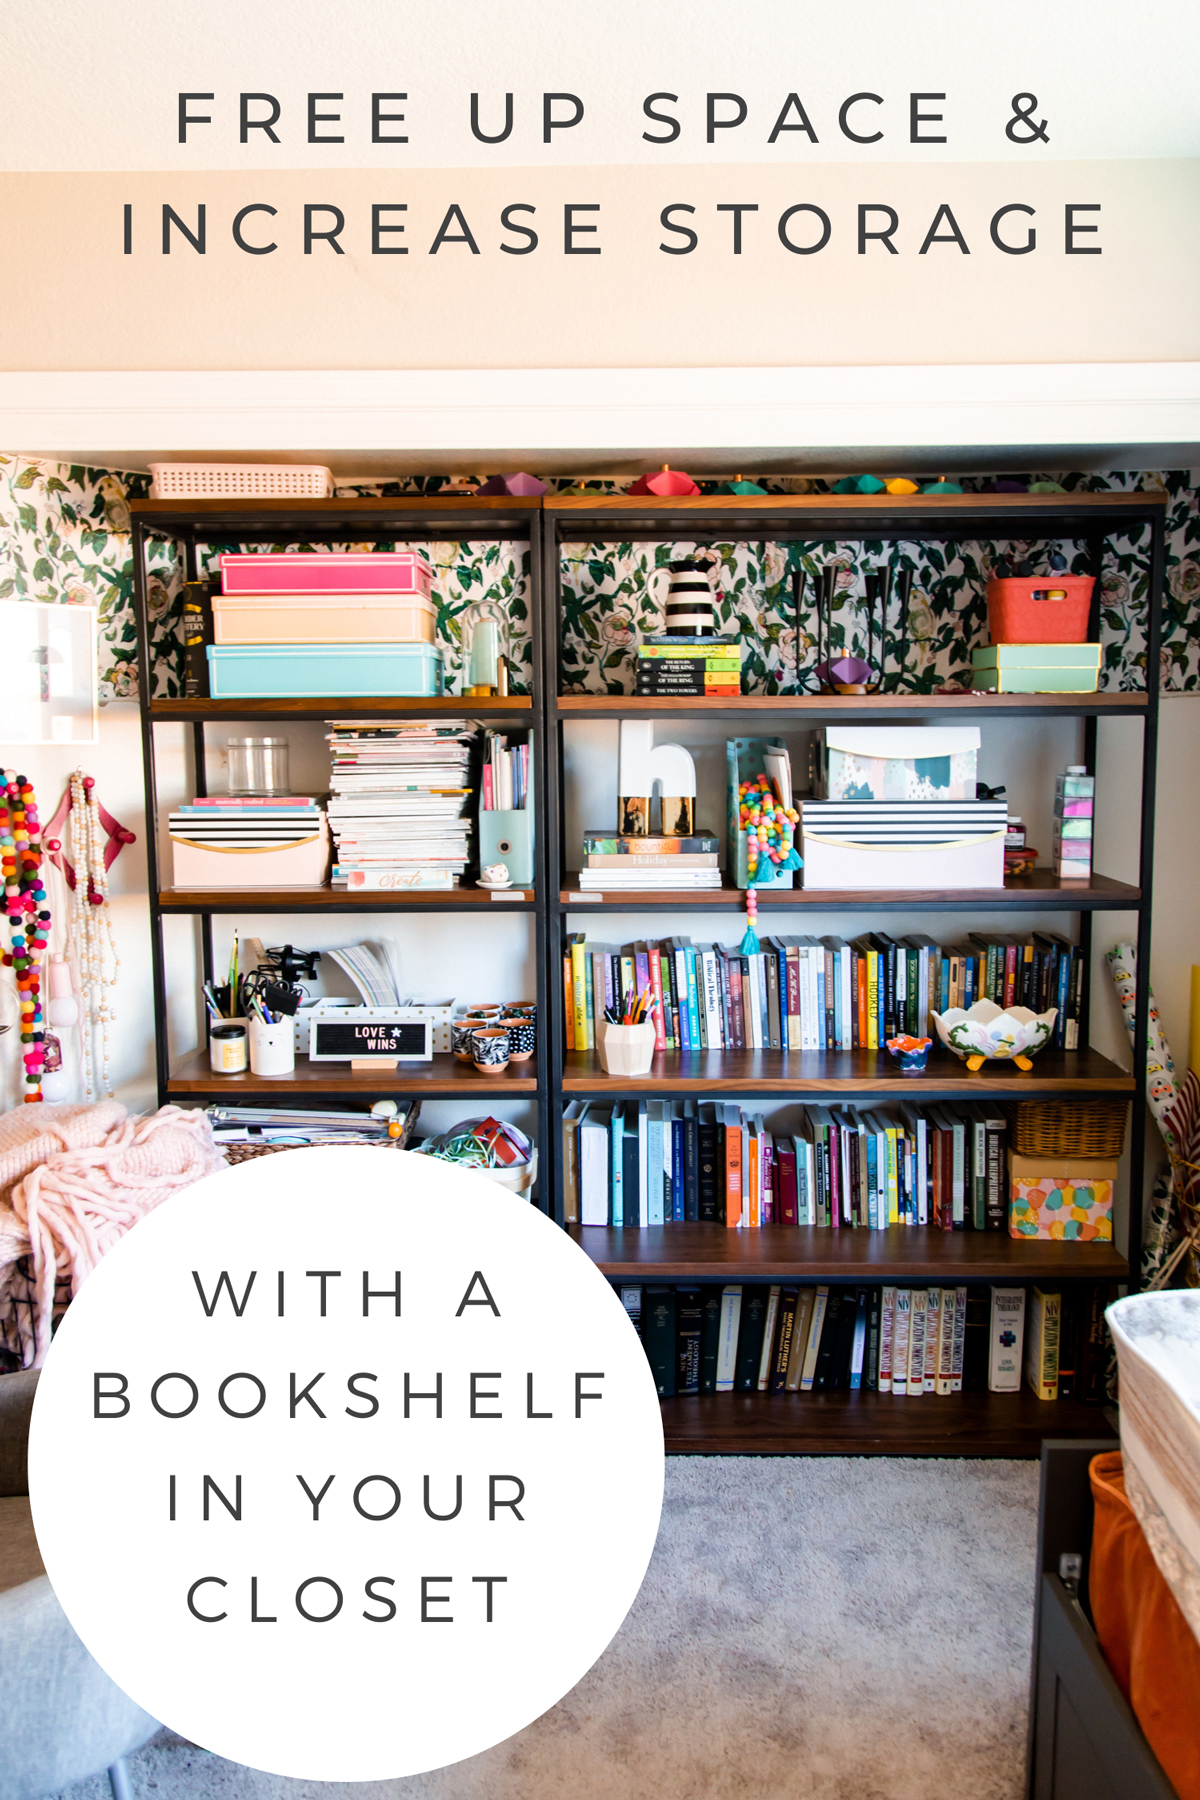 Bookshelf in closet Storage idea